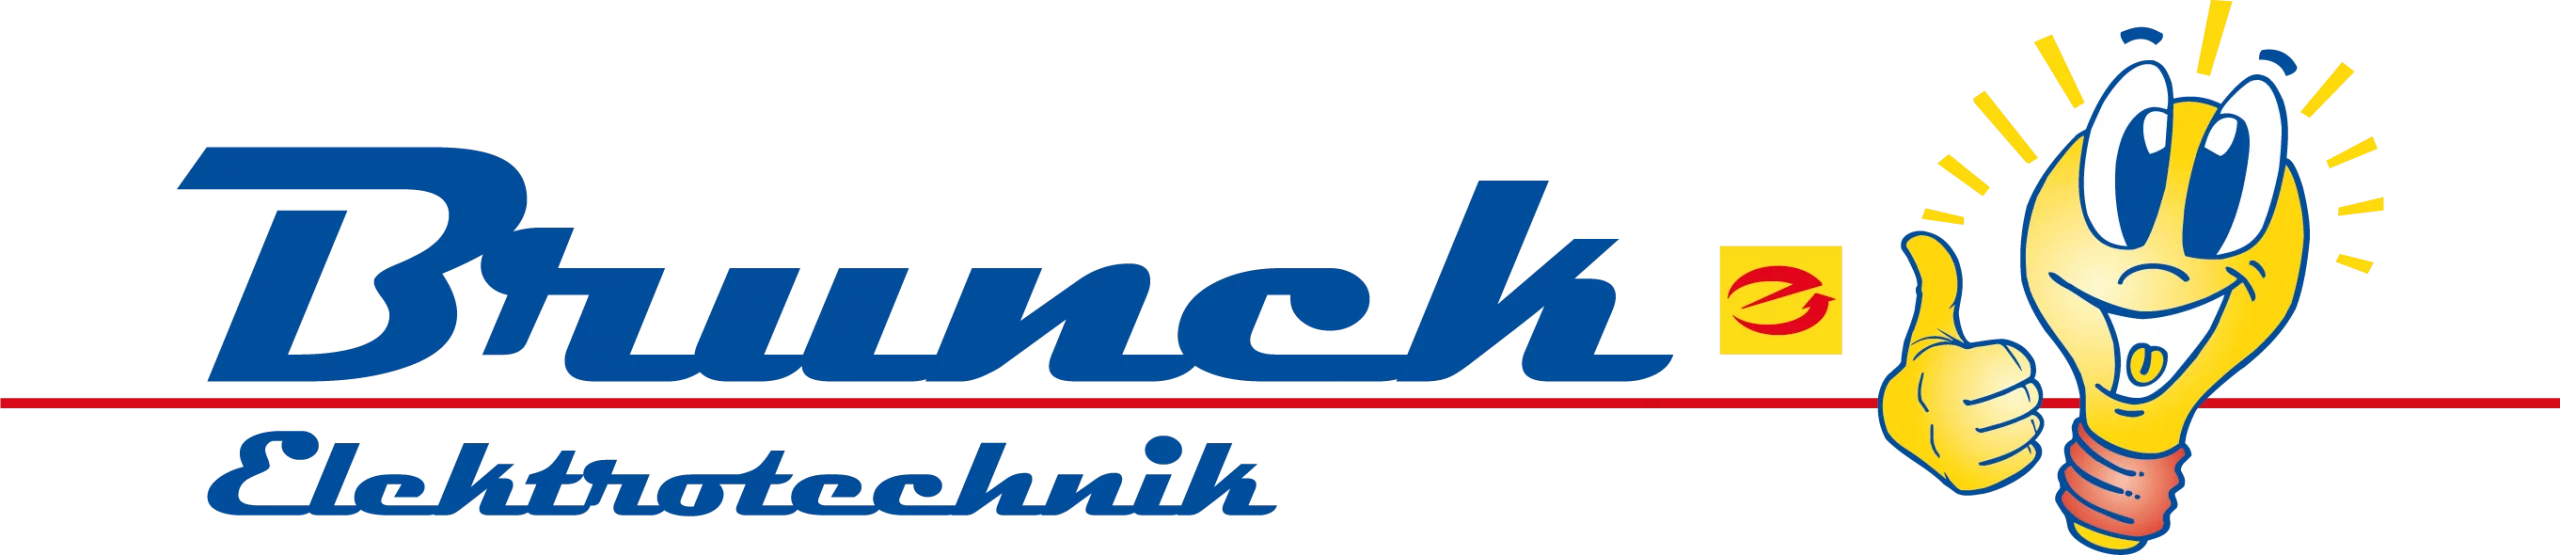 brunck-elektro.de - Ihr Elektroinstallateur im Rhein-Main Gebiet - aus Frankfurt am Main